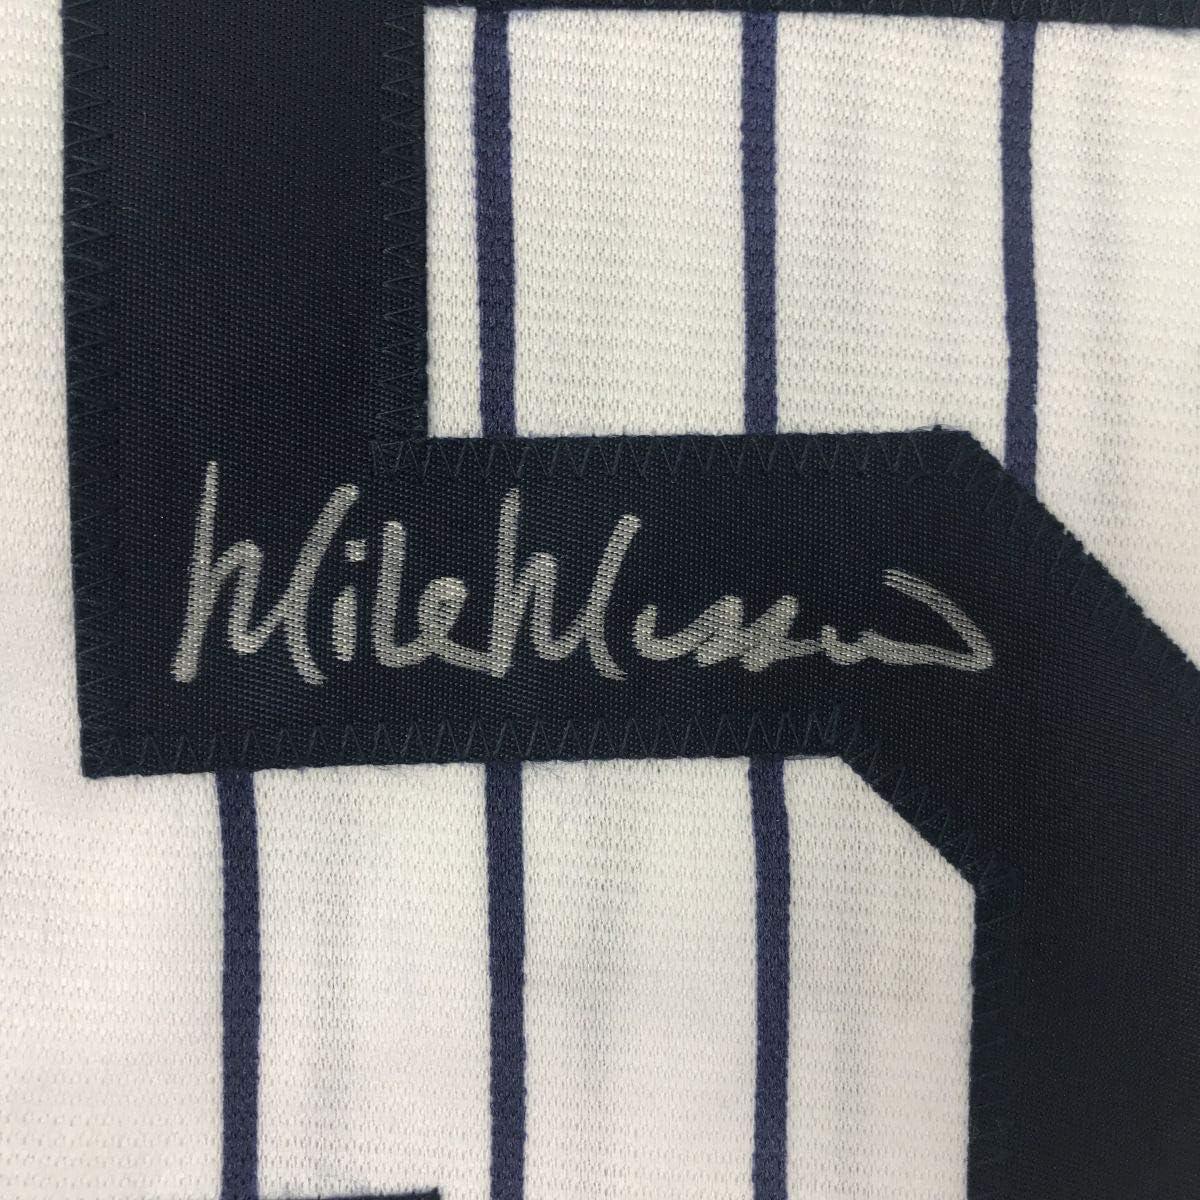 Autographed/Signed Mike Mussina New York Pinstripe Baseball Jersey JSA COA